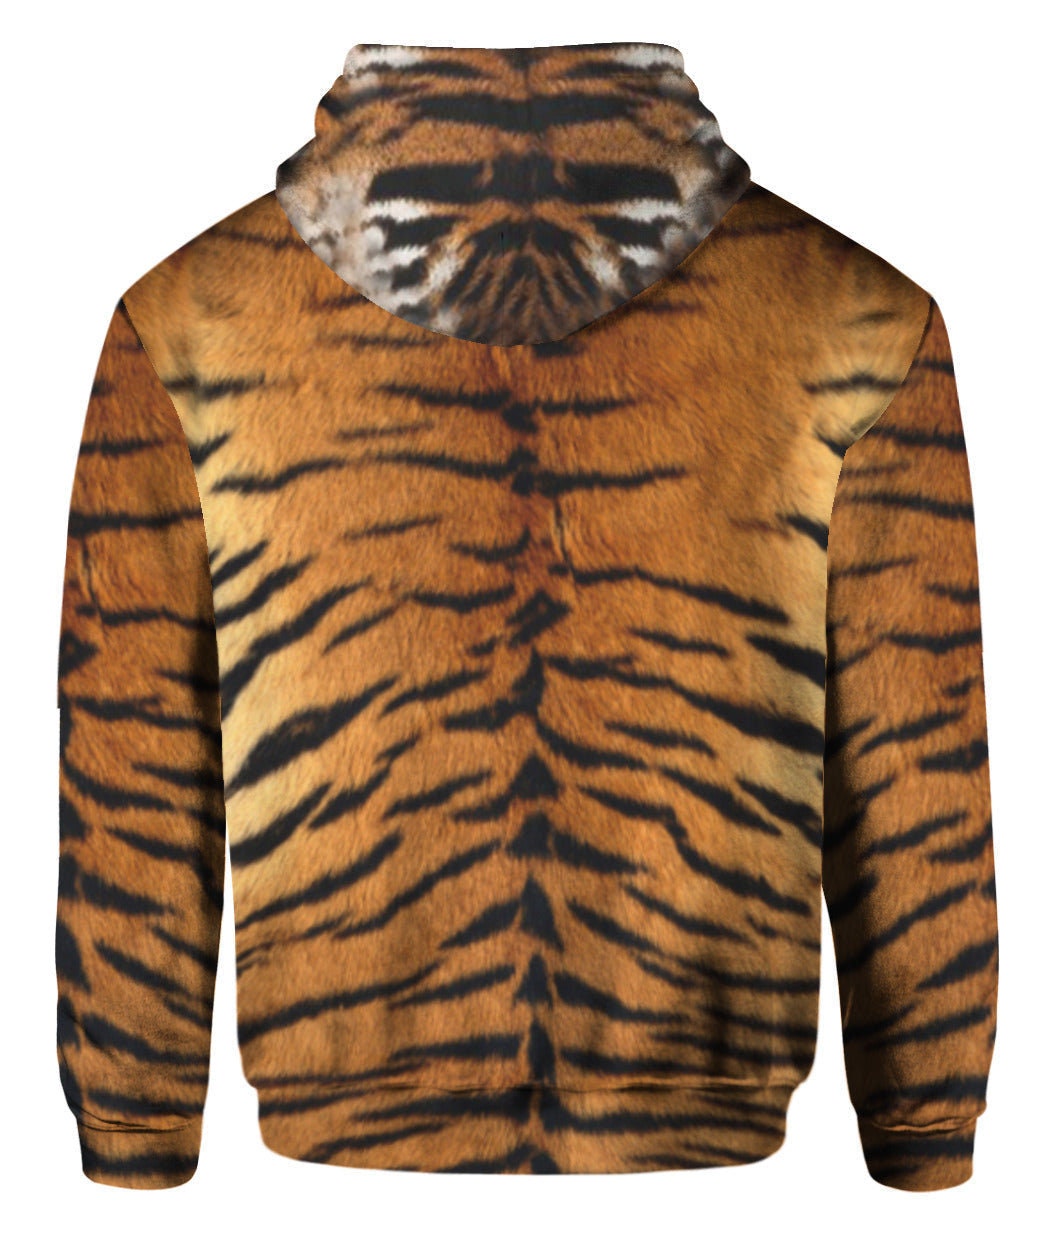 Tiger Costume Cosplay Halloween Hoodie, Tiger Lover Hoodie, Halloween Gift